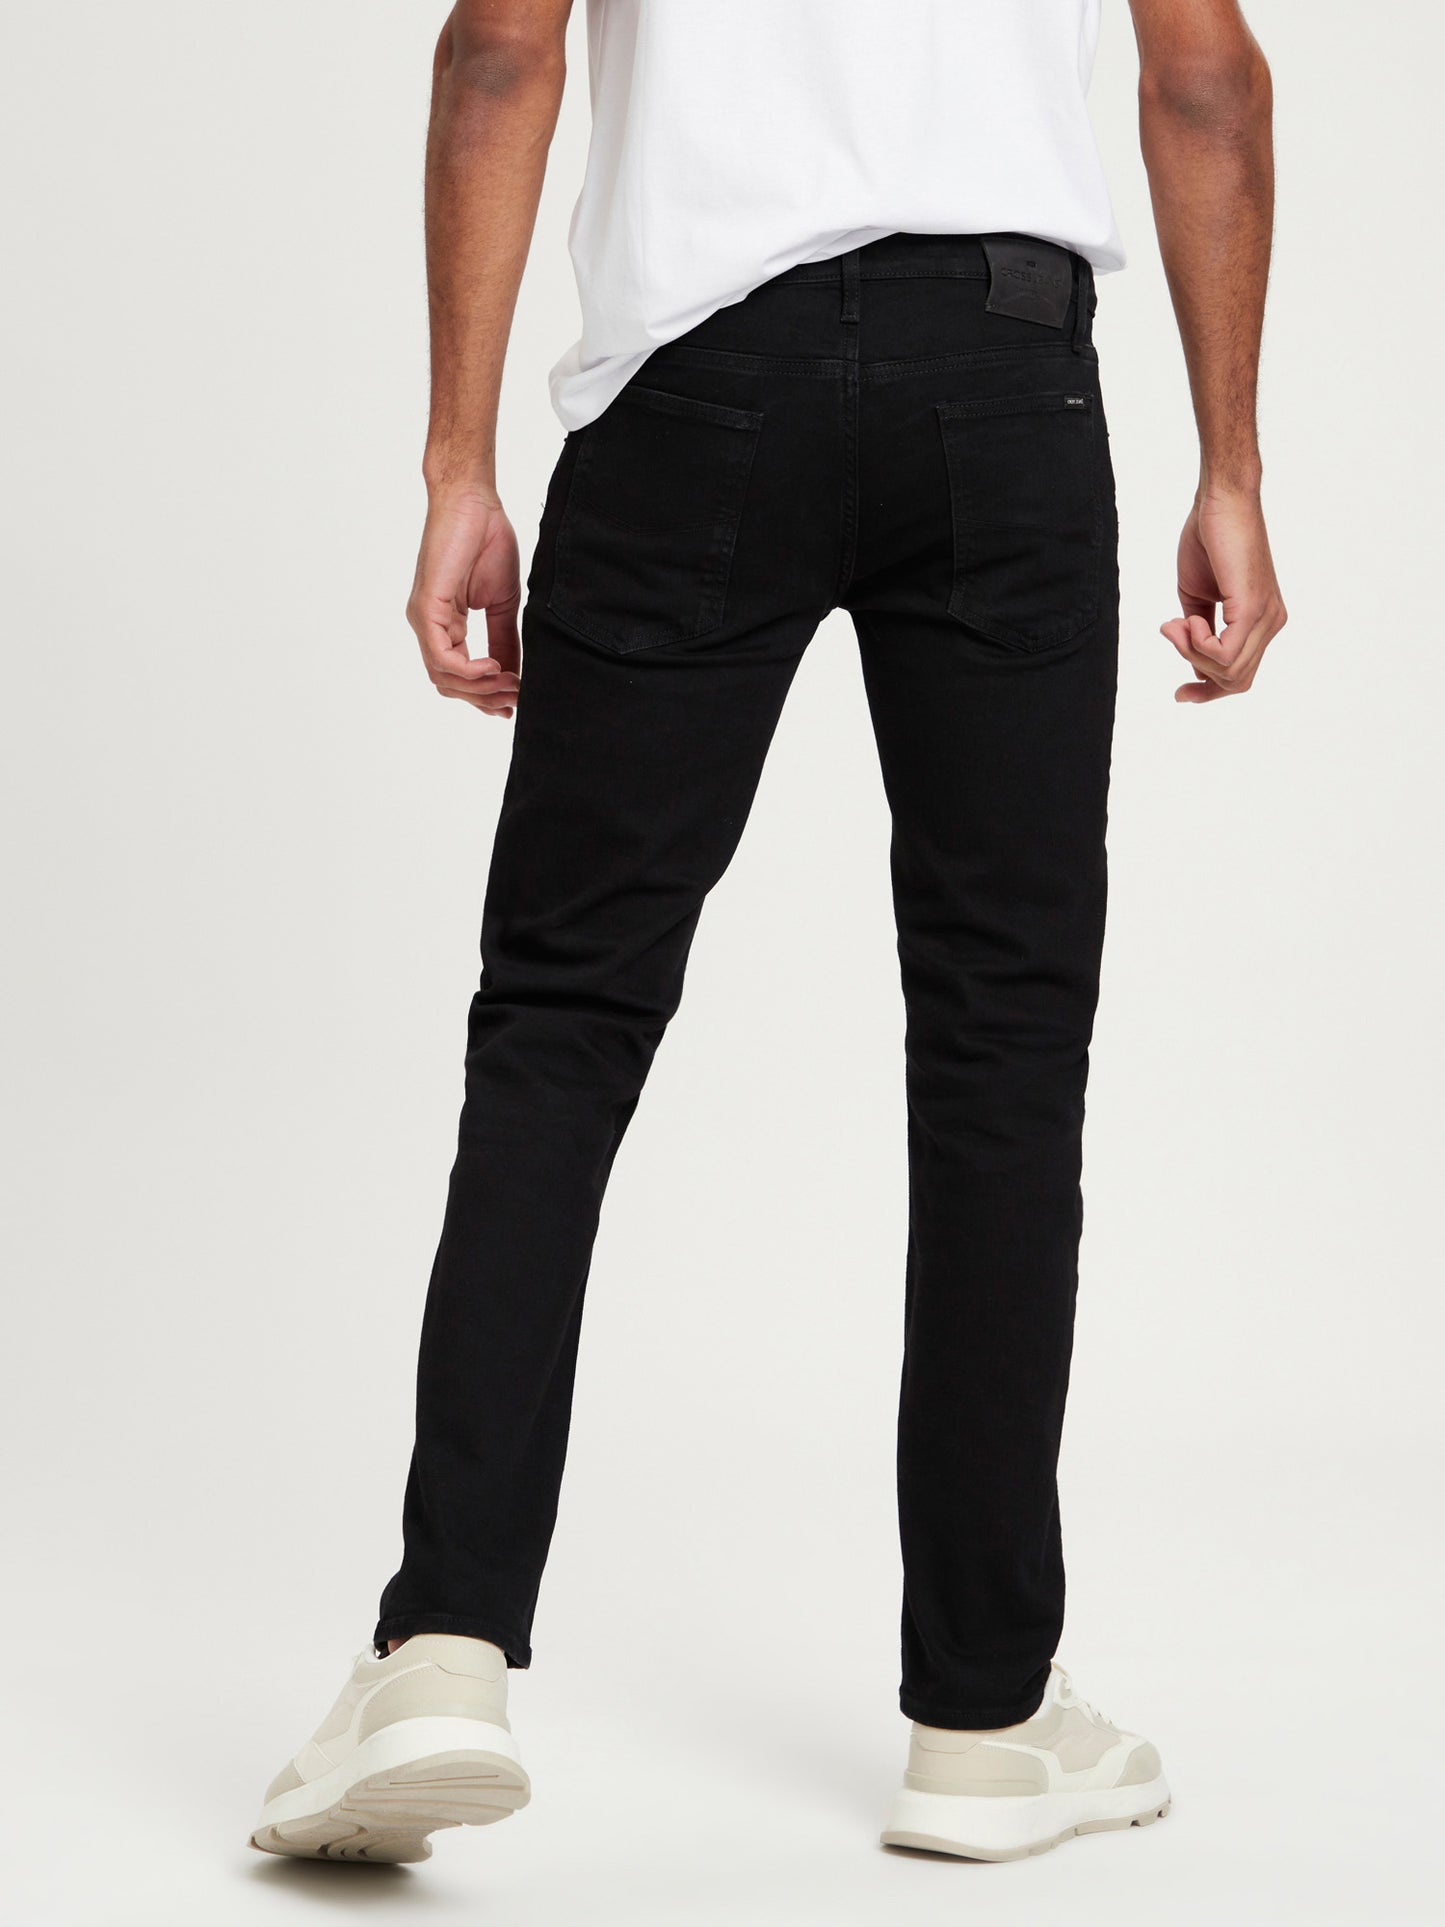 Damien men's jeans slim fit regular waist straight leg black.